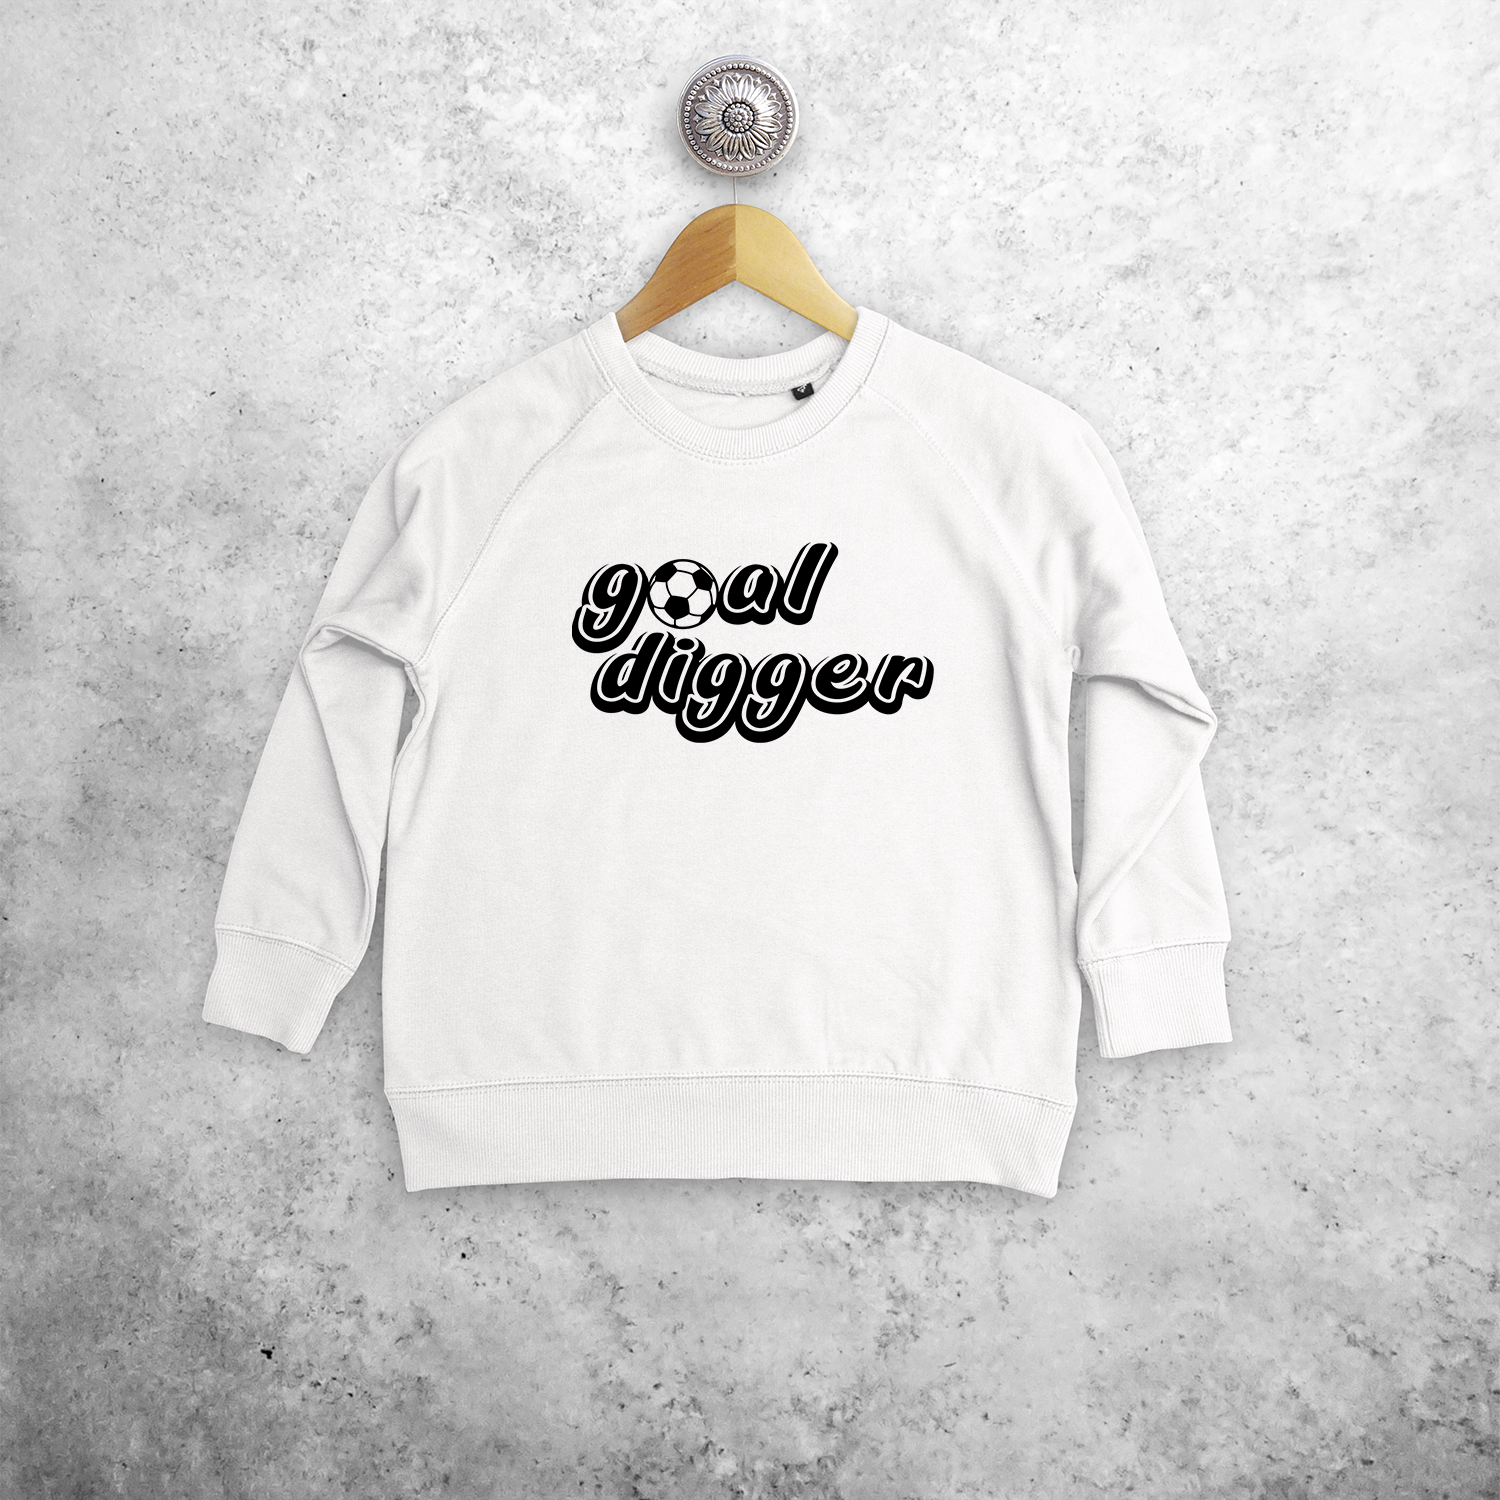 'Goal digger' kids sweater